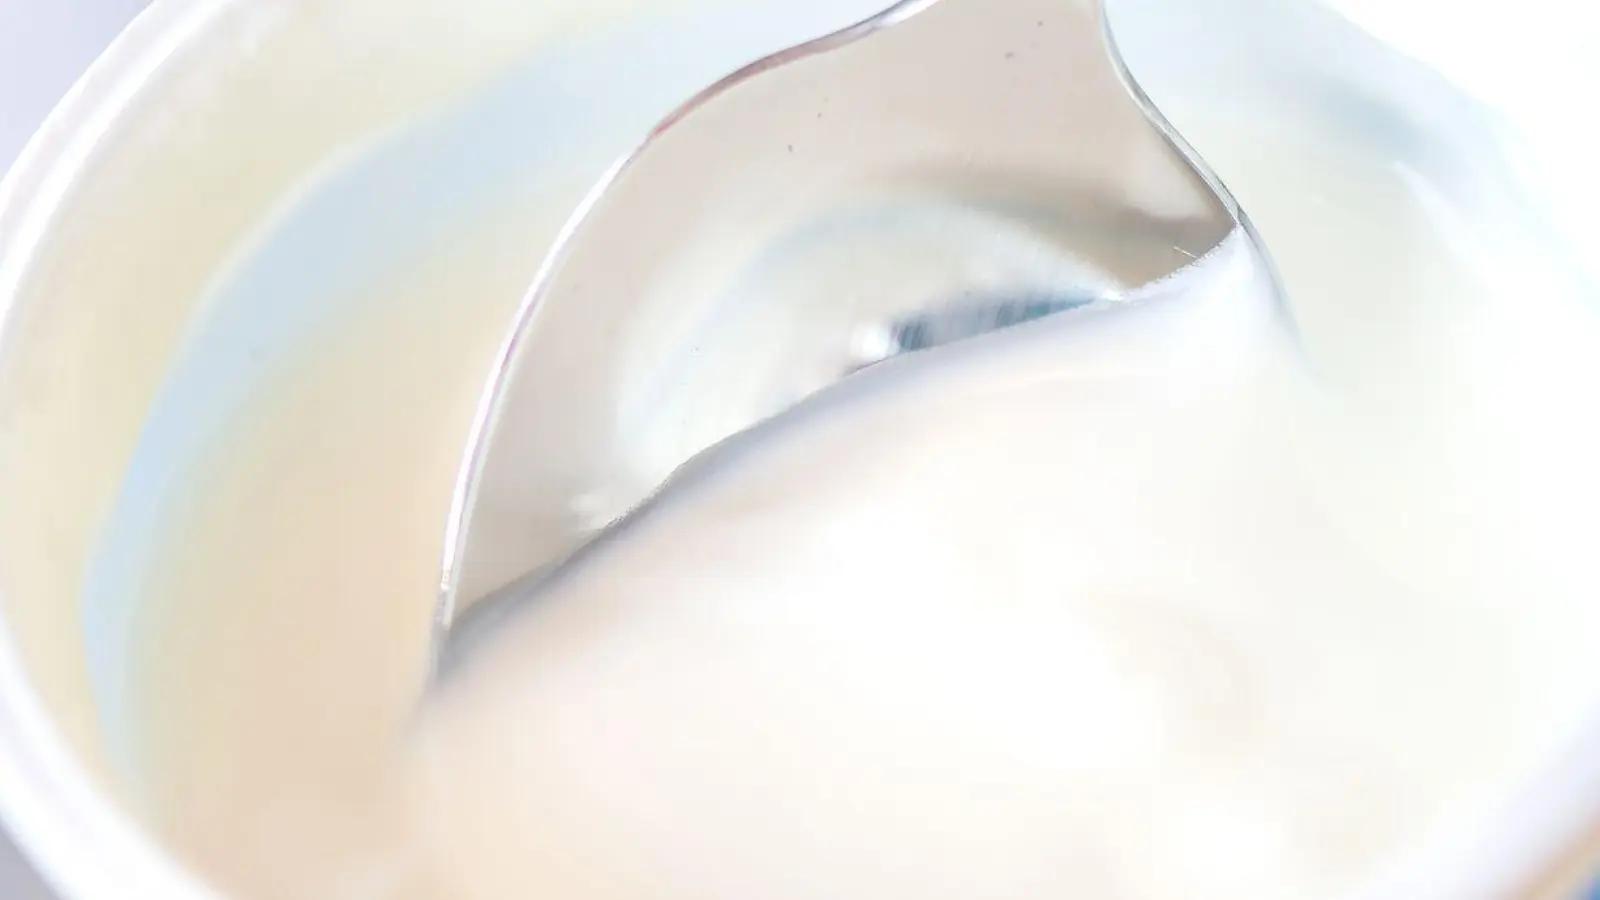 Naturjoghurt ist zuckerarm, aber nicht zuckerfrei, da der natürliche Milchzucker während der Fermentierung in Milchsäure umgewandelt wird. Ein Rest Milchzucker bleibt jedoch enthalten. (Foto: Zacharie Scheurer/dpa-tmn)